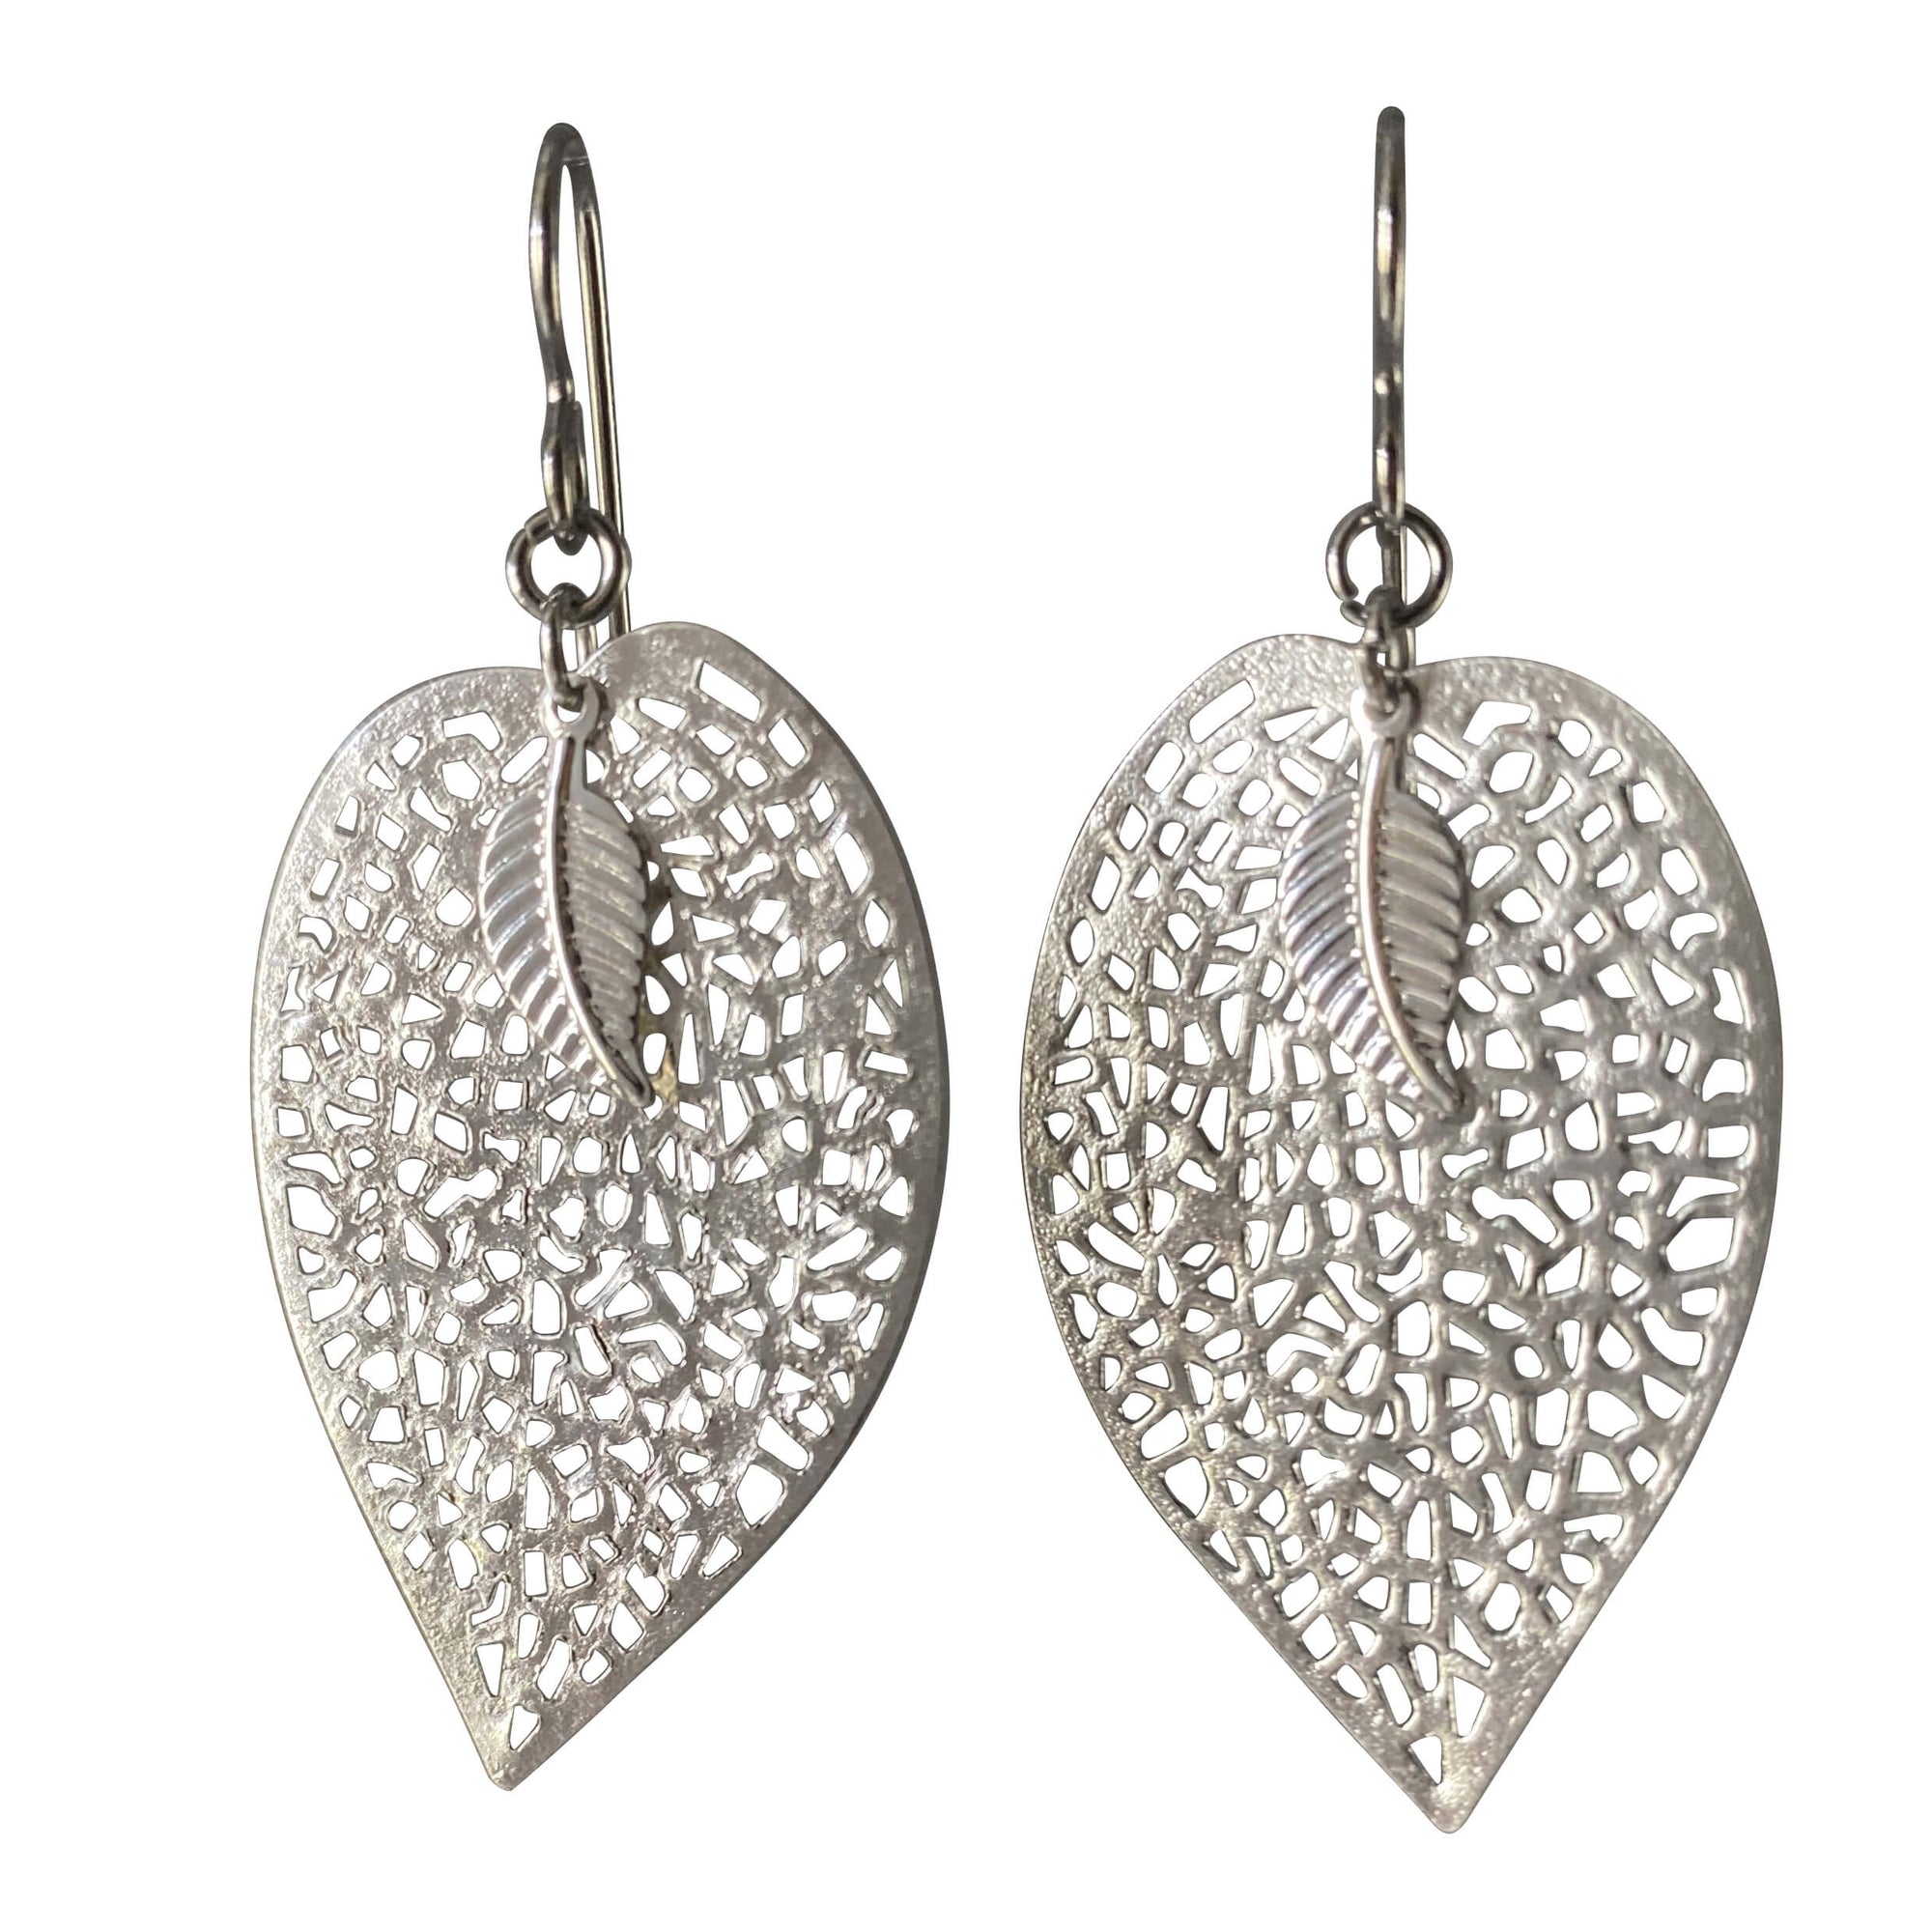 Silver Leaf Filigree Earrings for Sensitive Ears-Earrings- Creative Jewelry by Marcia